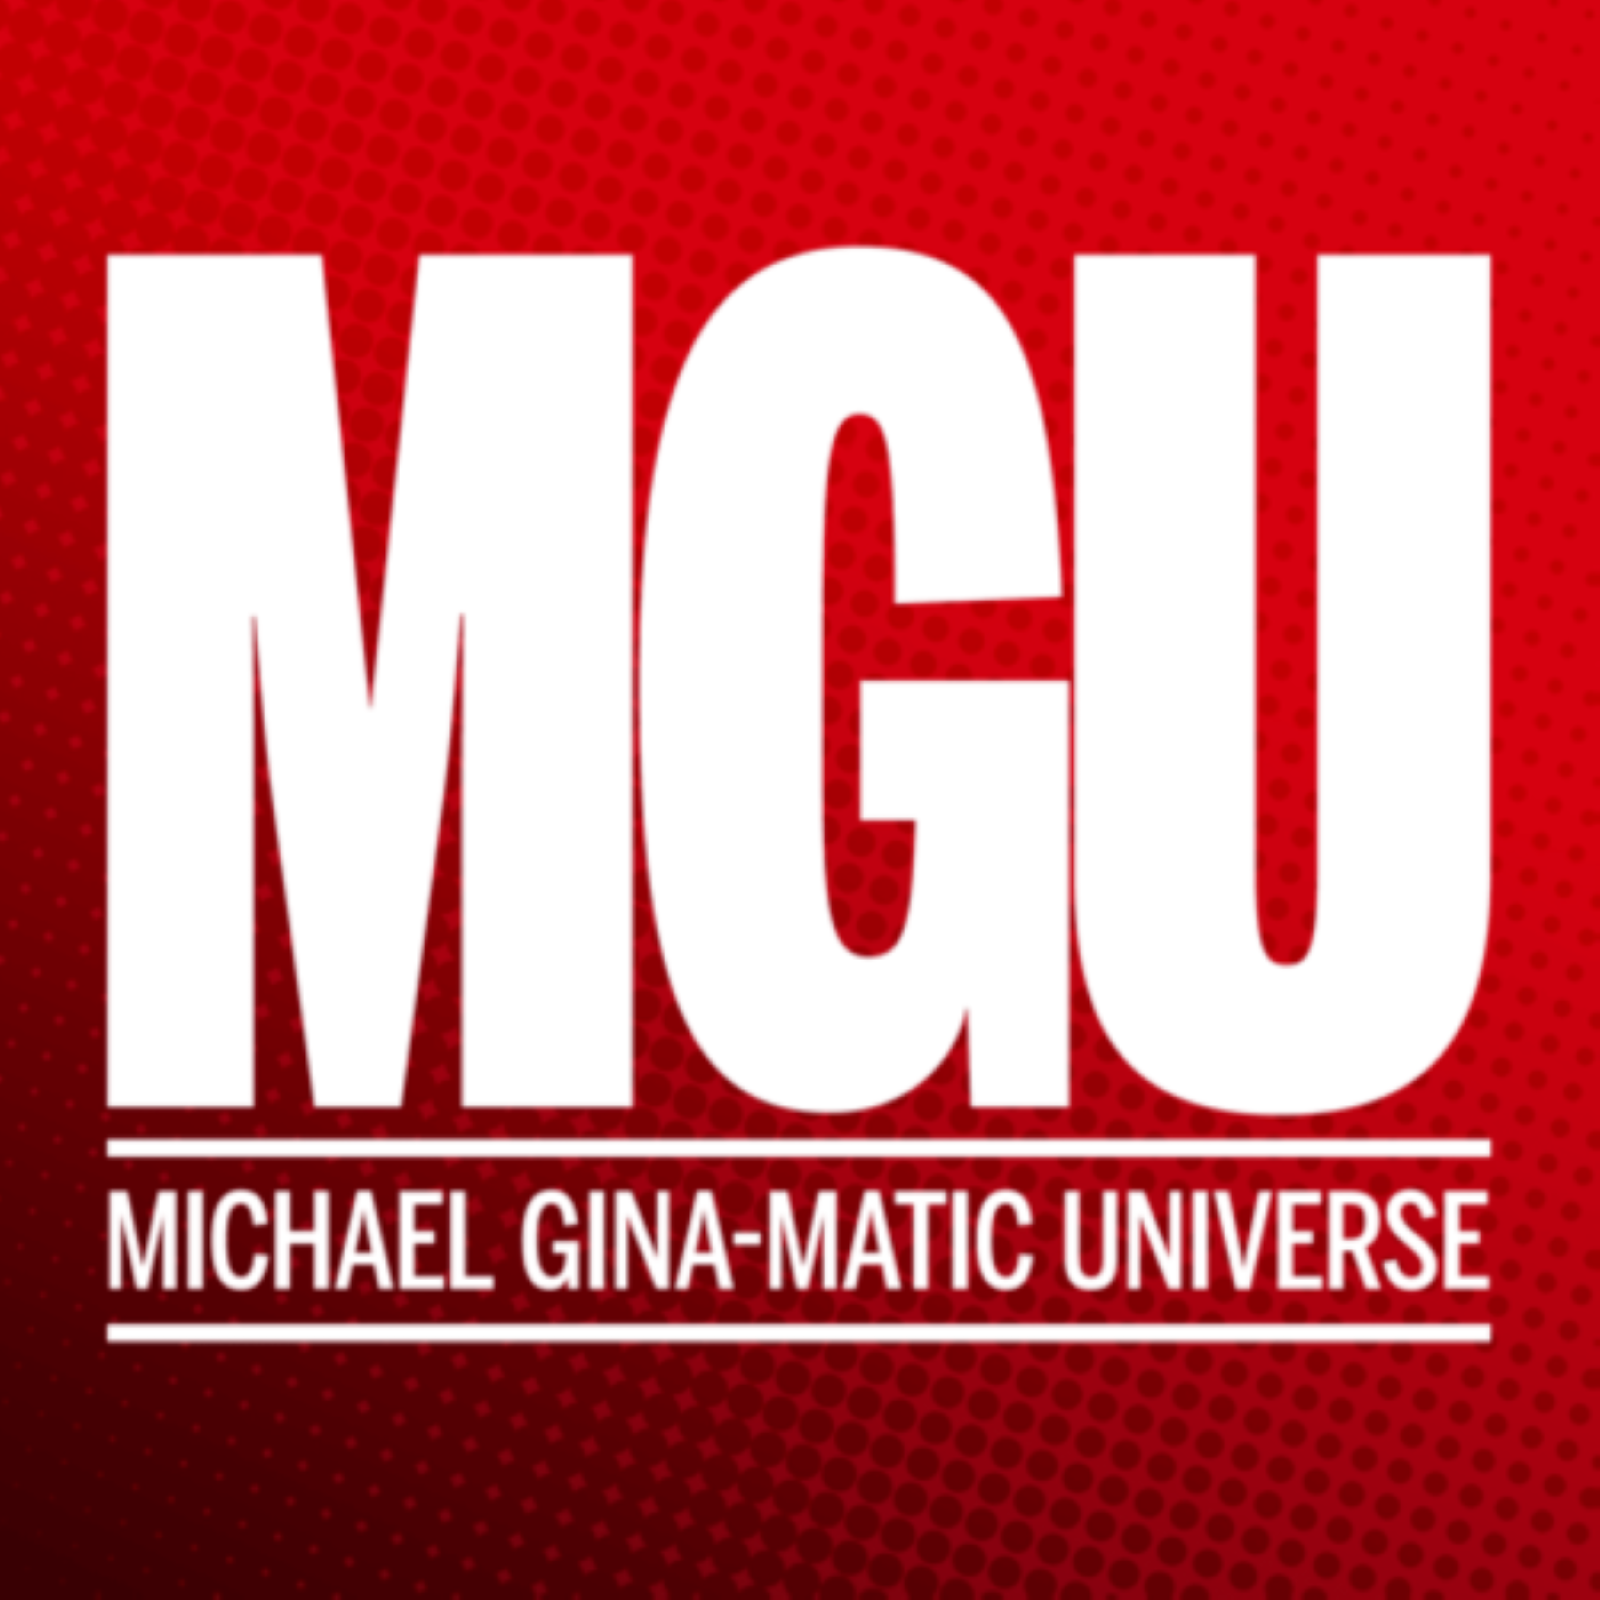 The Michael Gina-matic Universe (MGU)